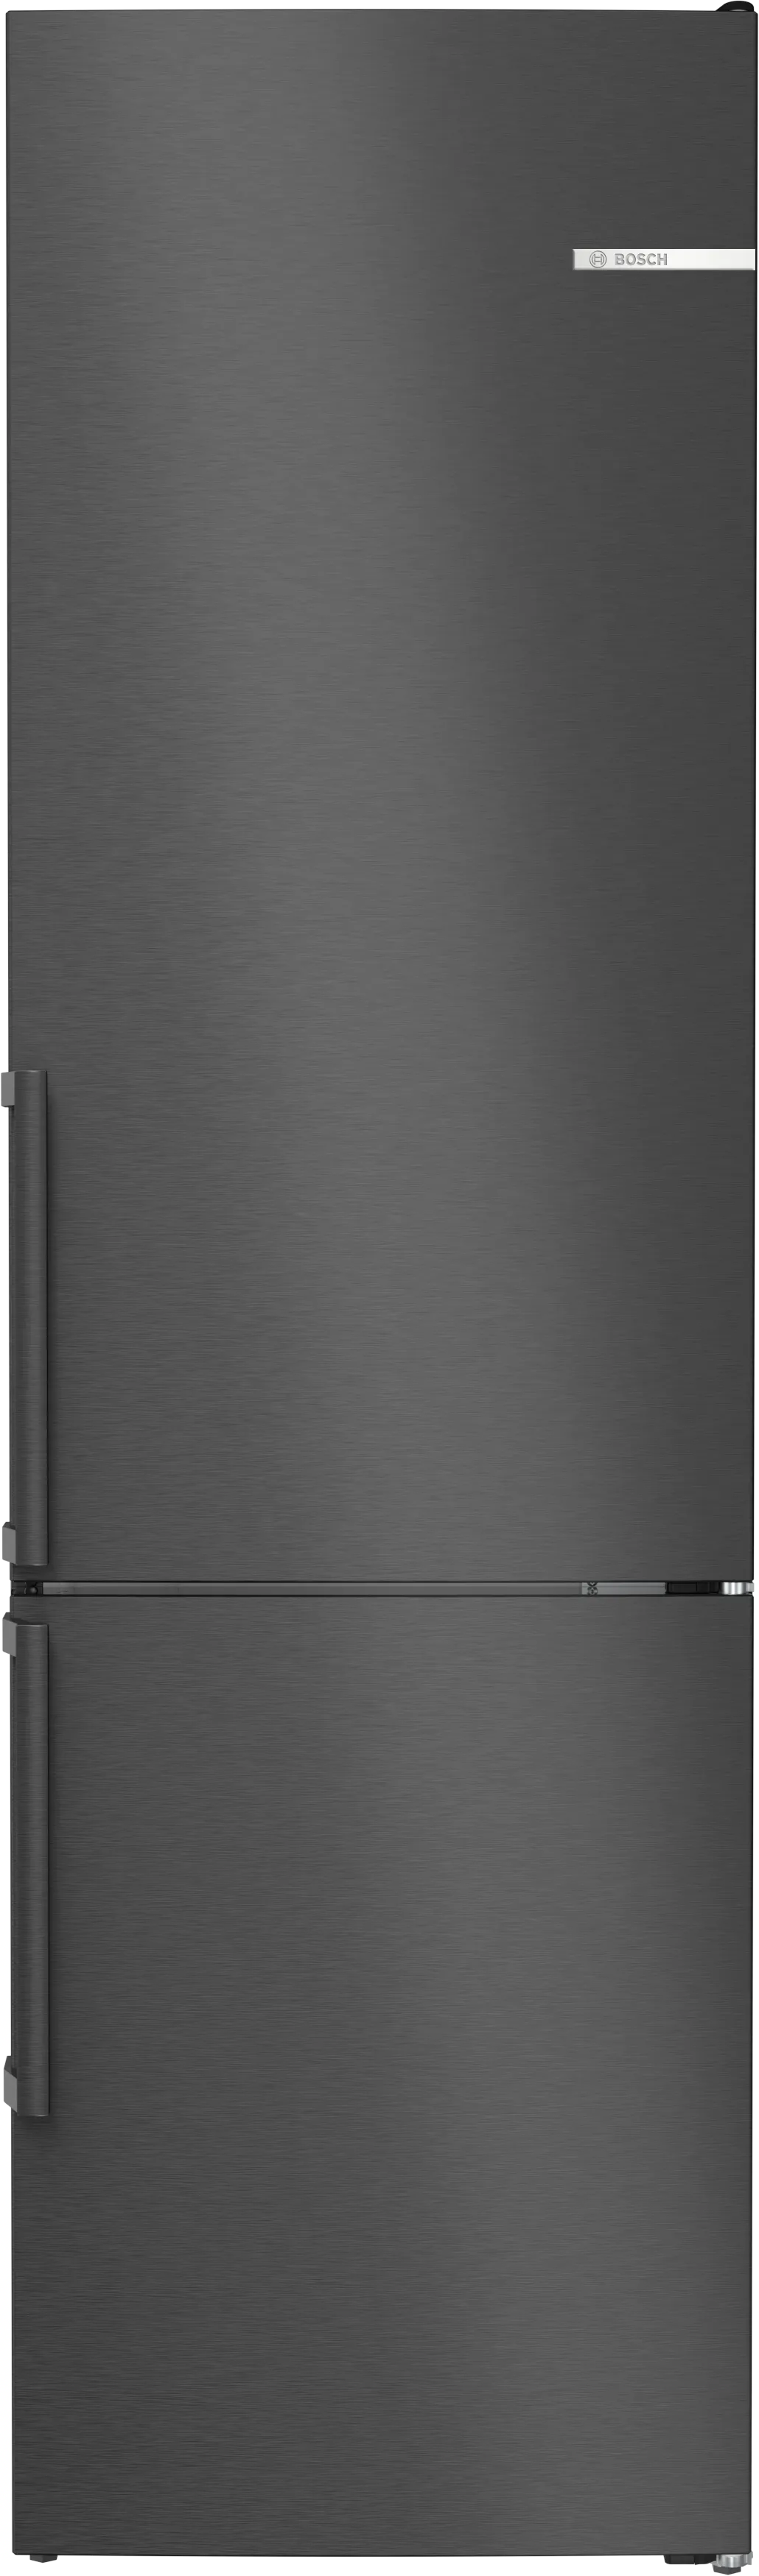 Serija 4 Laisvai statomas šaldytuvas-šaldiklis su šaldiklio skyriumi apačioje 203 x 60 cm Black stainless steel 